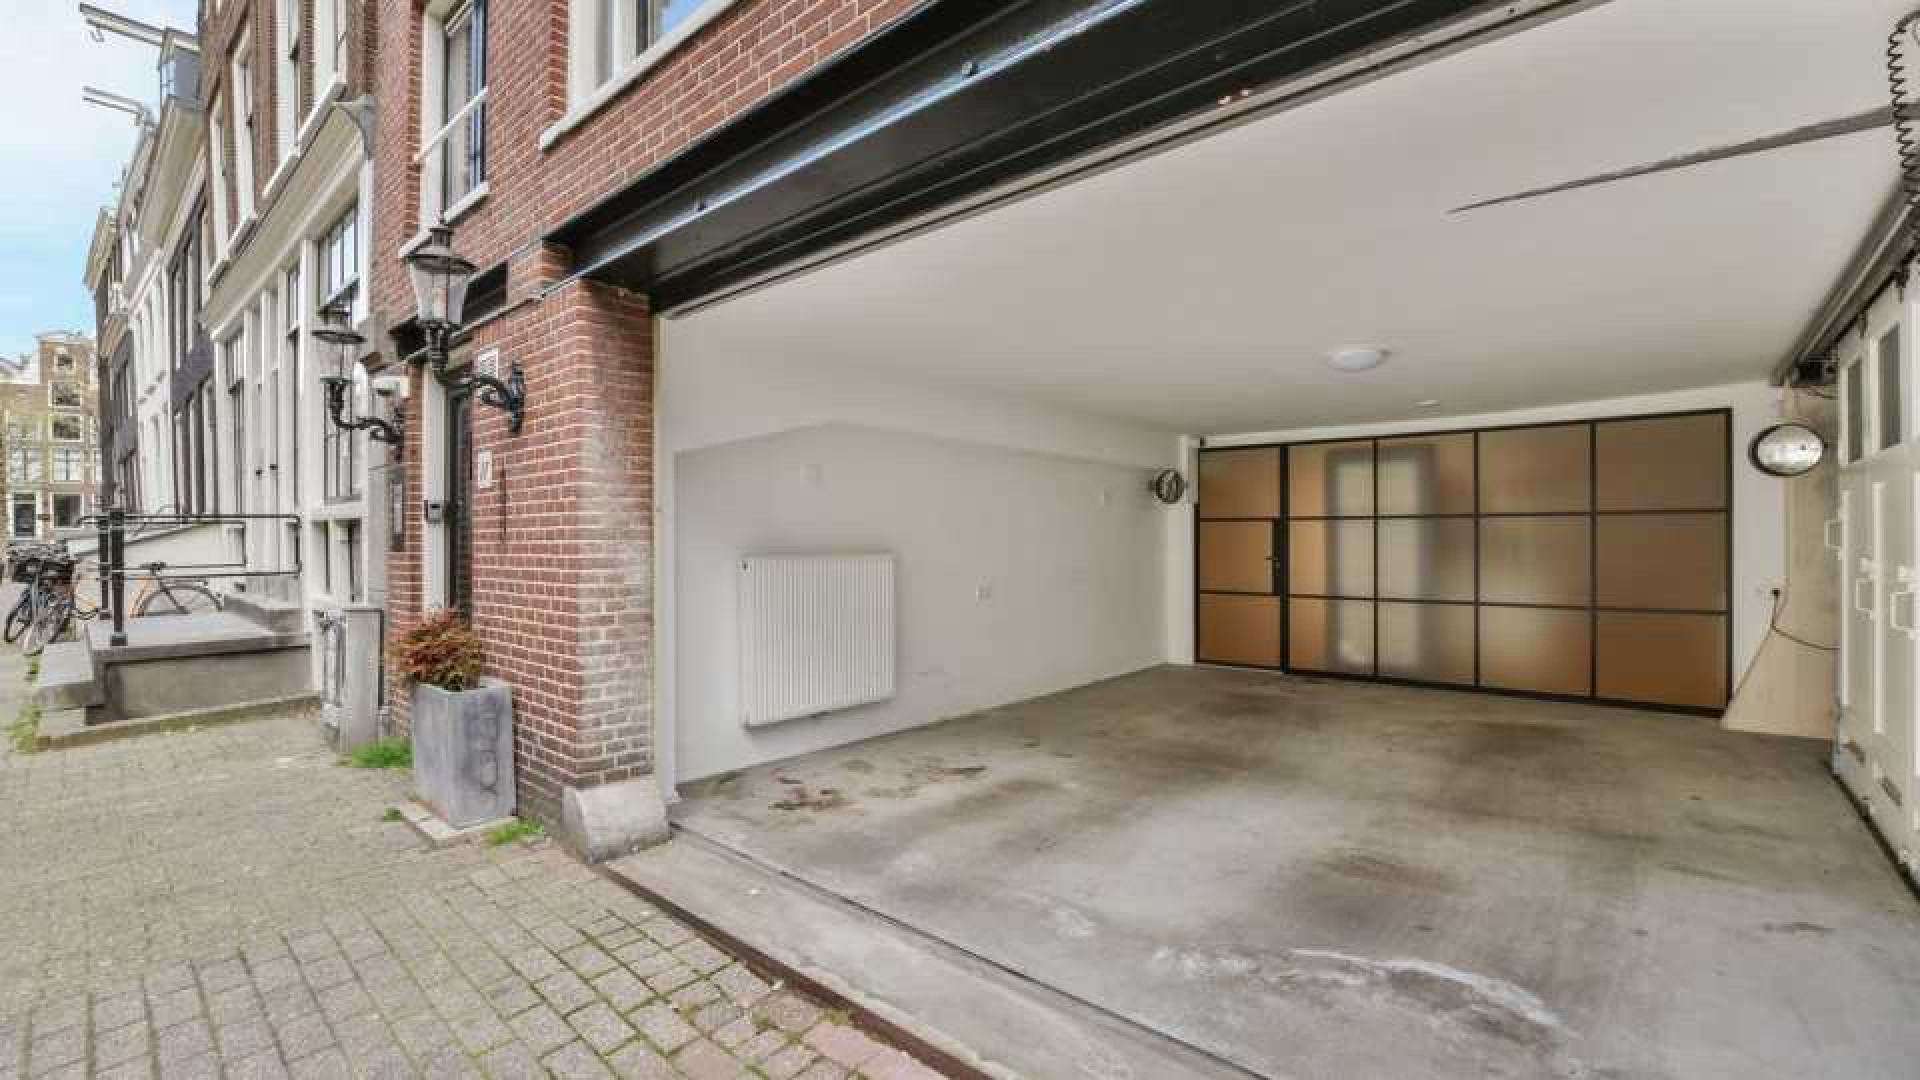 Huis Lil Kleine in centrum Amsterdam verkocht.